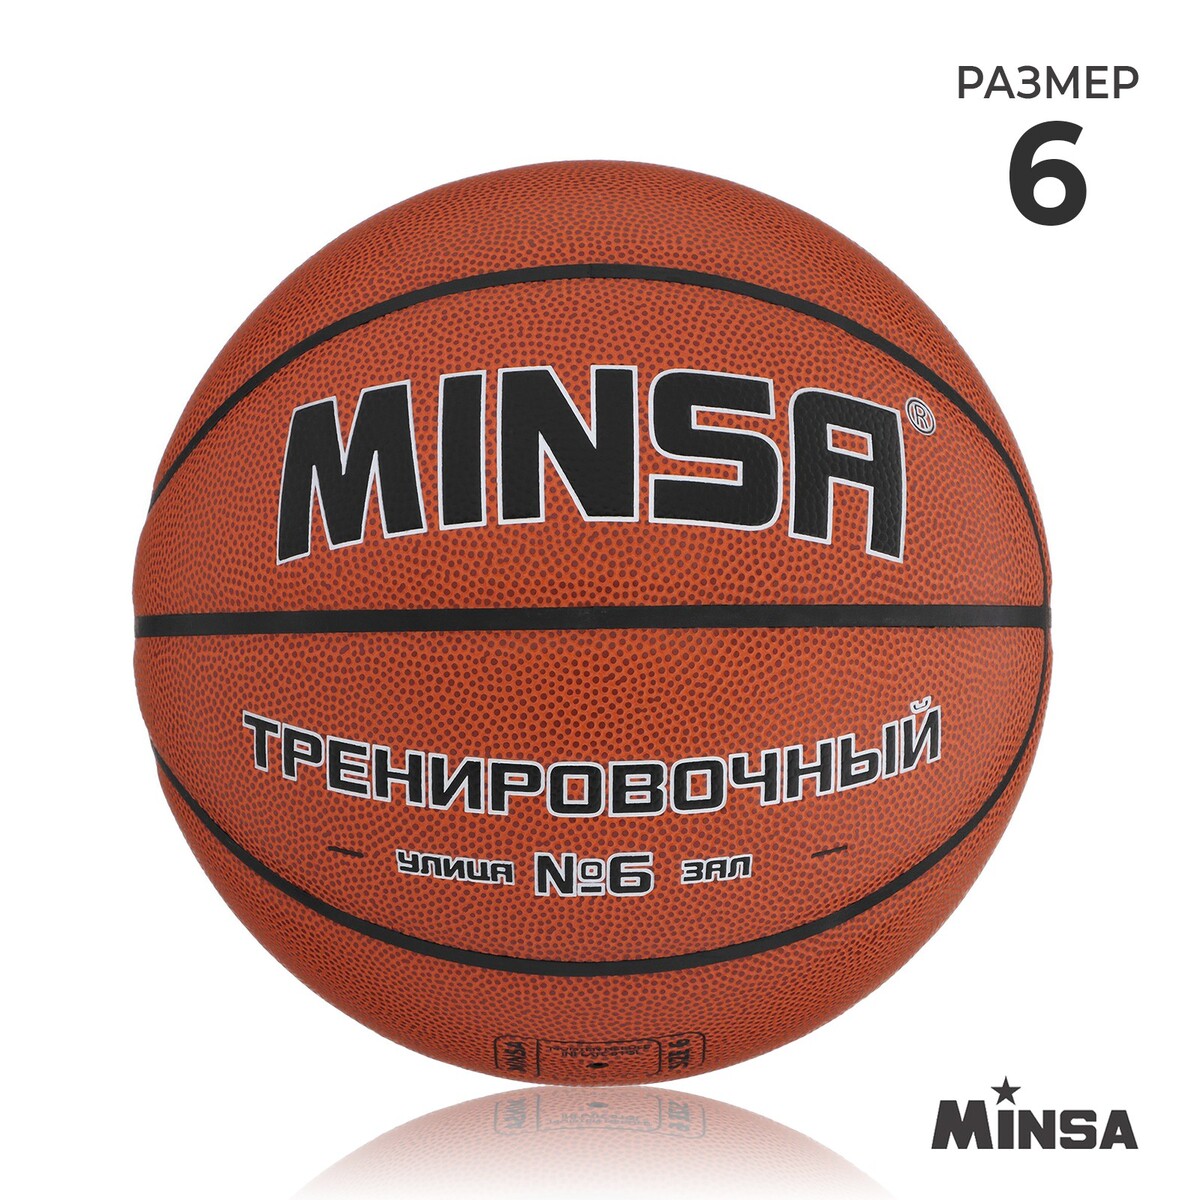 Баскетбольный мяч minsa, тренировочный, pu, клееный, 8 панелей, р. 6 мяч баскетбольный minsa sport пвх клееный 8 панелей р 5